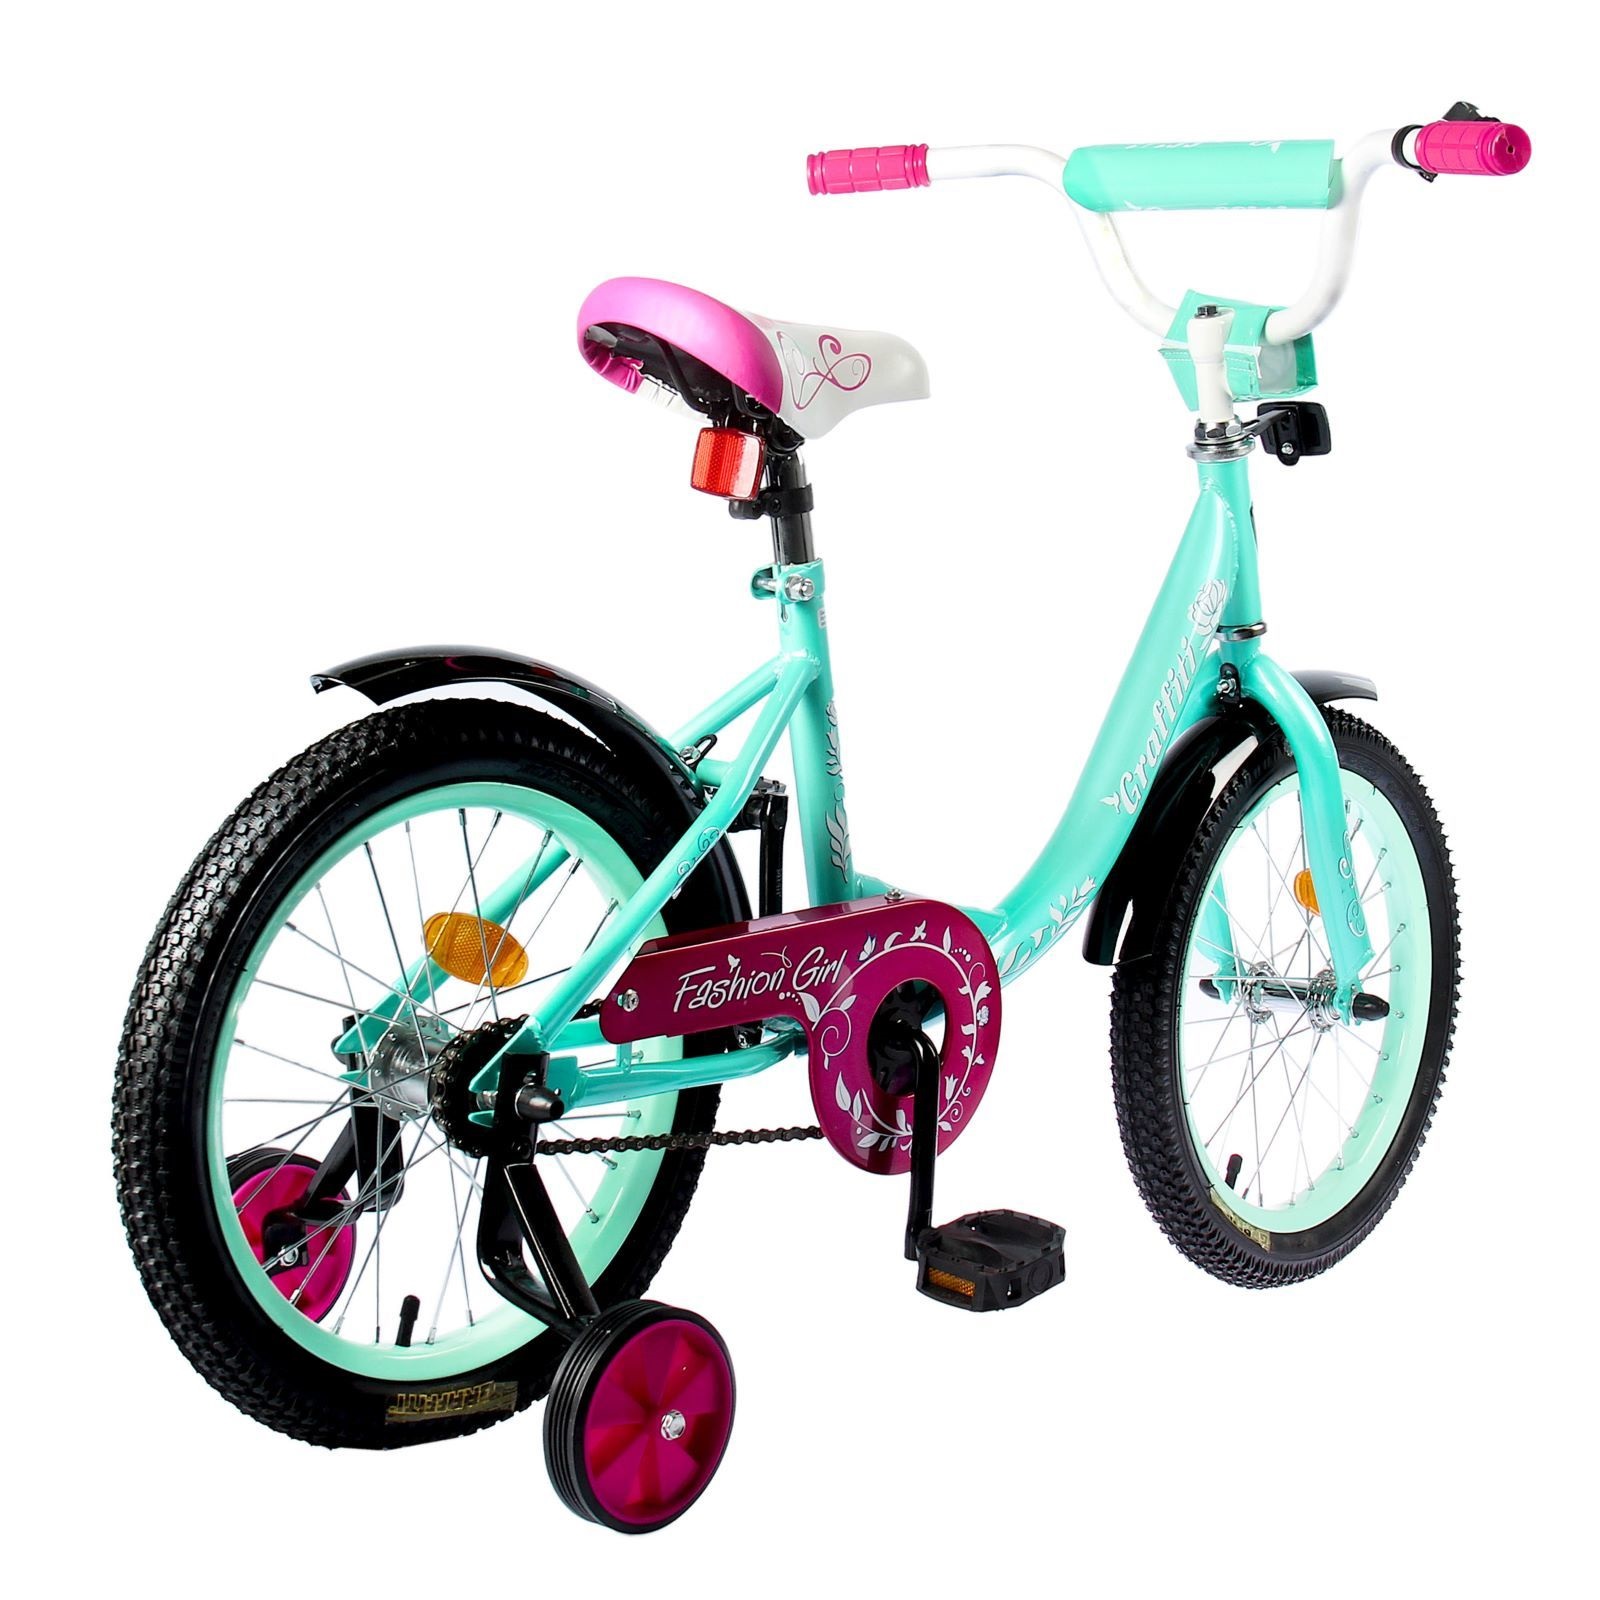 Авито детский велосипед девочка. Велосипед Graffiti Fashion girl. Велосипед для девочки. Детский велосипед для девочки. Велосипед детский двухколесный.